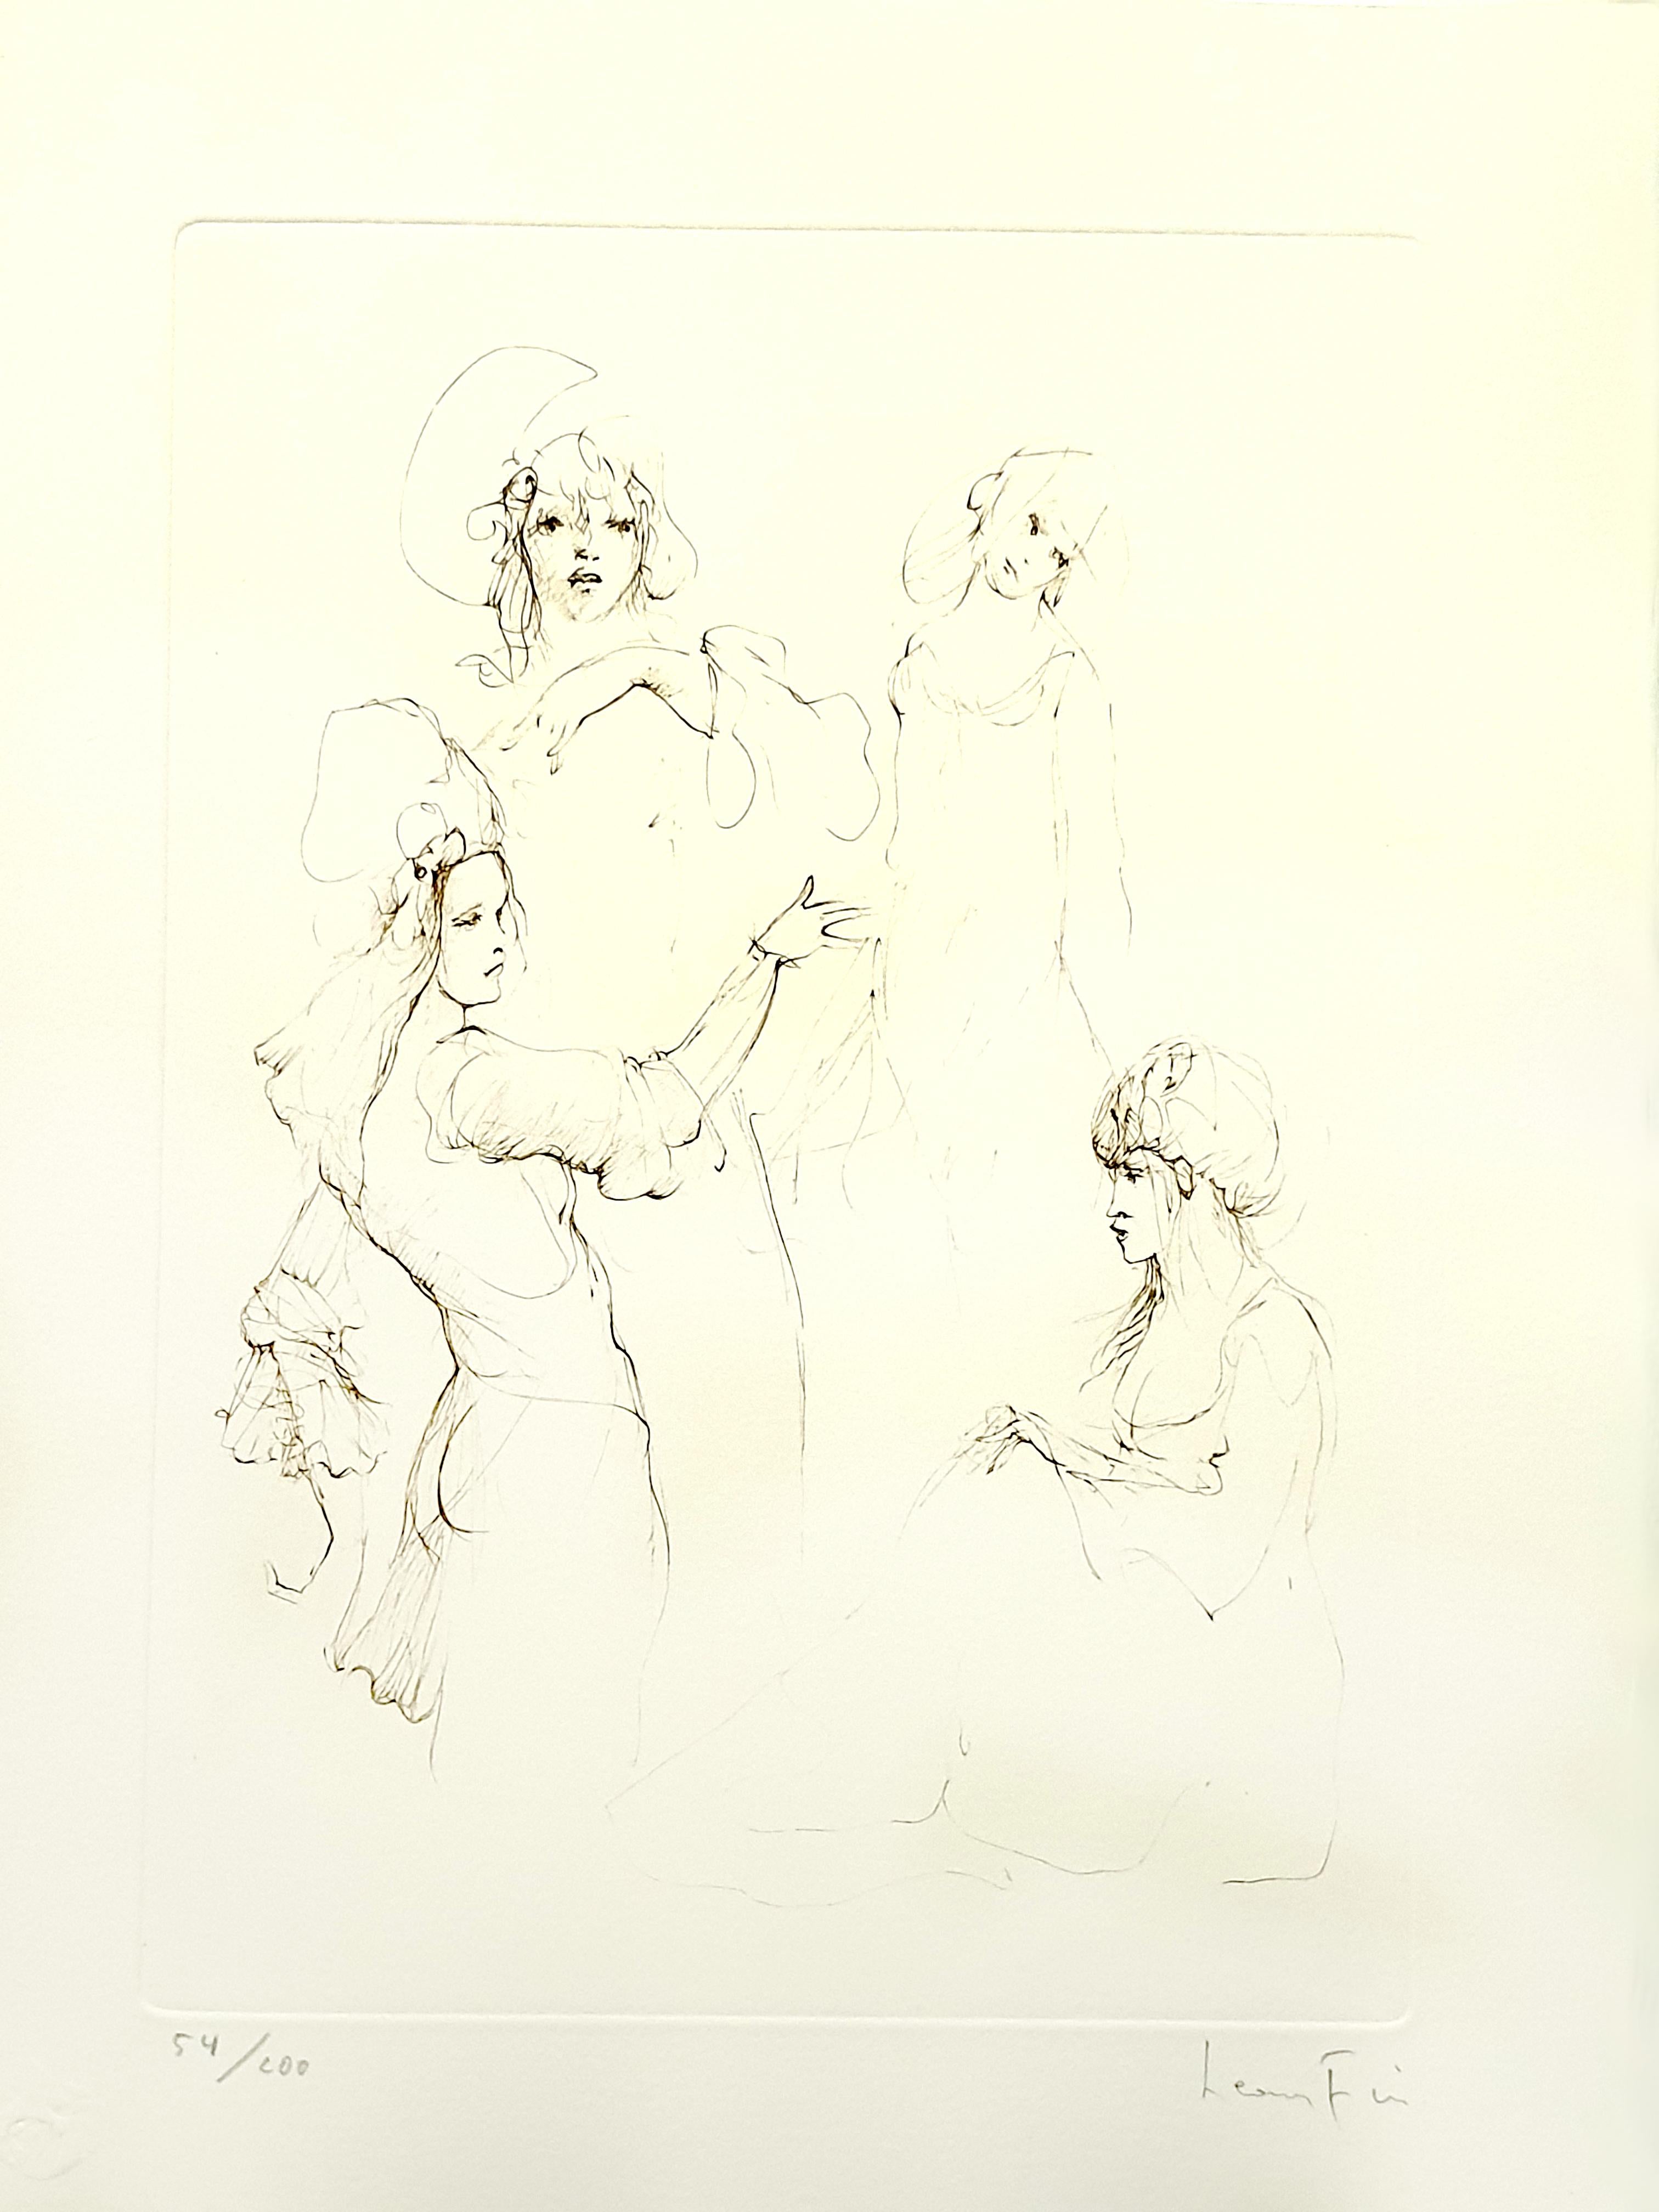 Leonor Fini - Diener - Original Handsignierte Lithographie
Les Elus de la Nuit
1986
Bedingungen: ausgezeichnet
Handsigniert und nummeriert
Auflage: 230
Abmessungen: 38 x 28 cm 
Ausgaben: Trinckvel, Paris